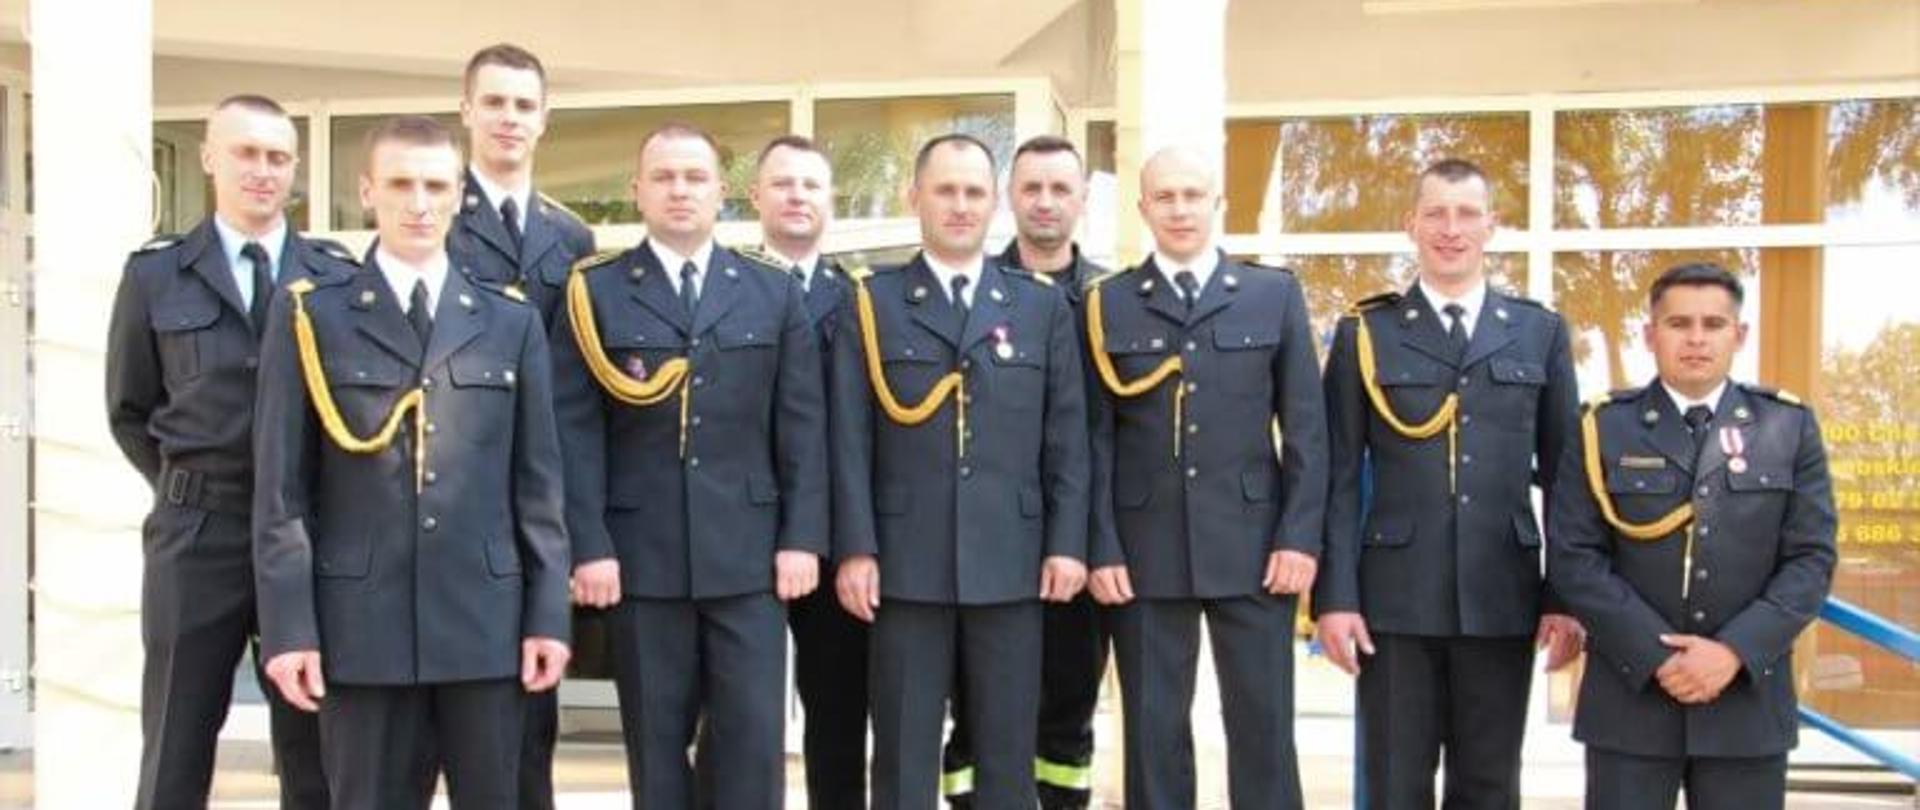 Na zdjęciu 10 strażaków ustawionych w dwu szeregu pozują do zdjęcia